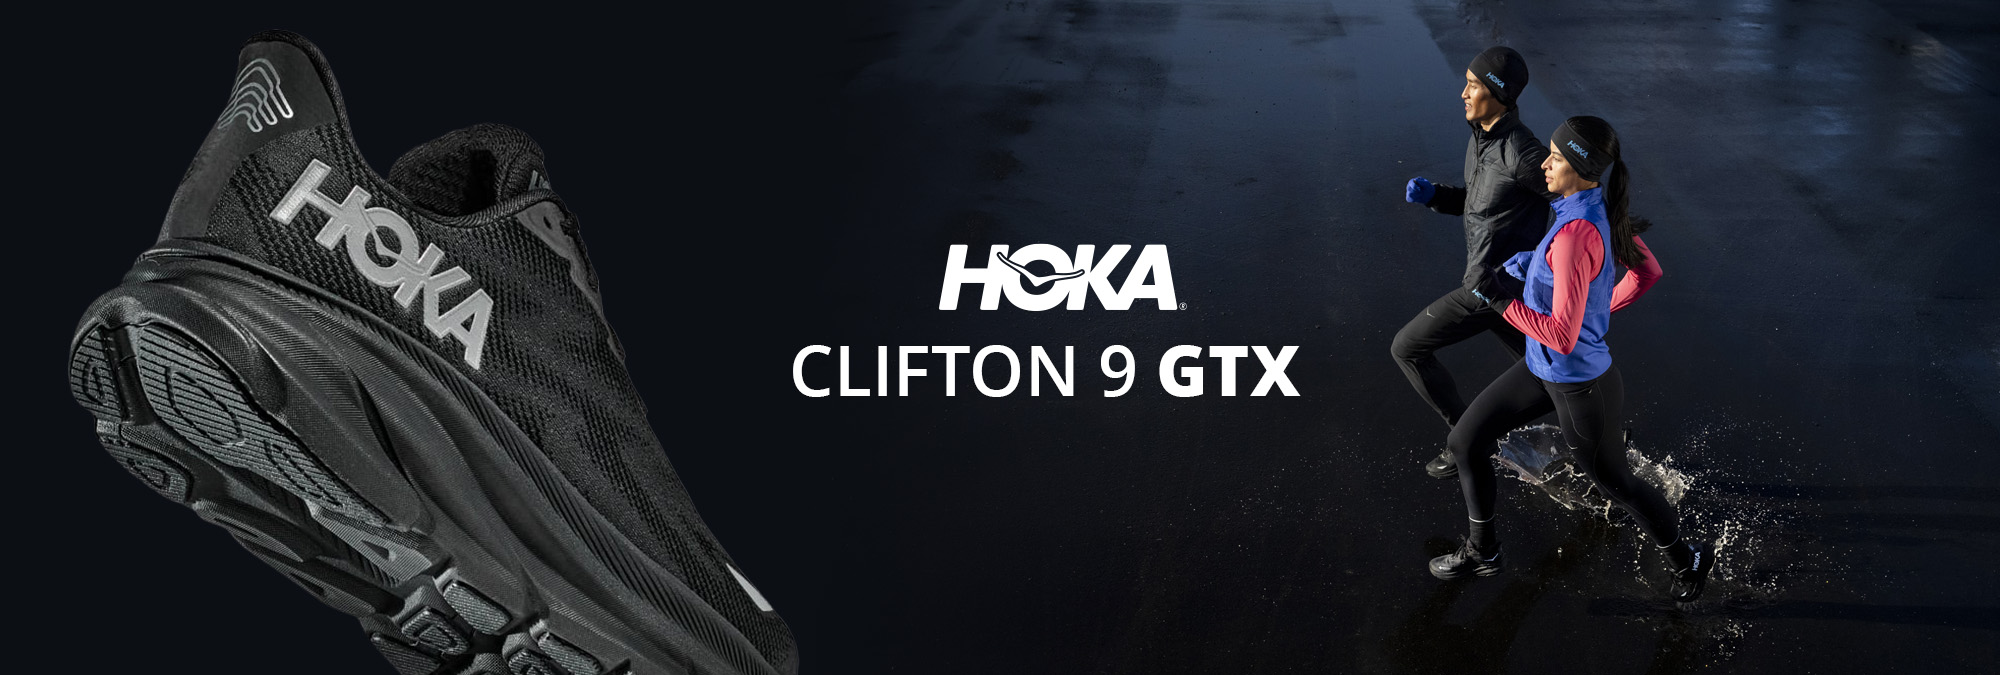 HOKA Clifton 9 GTX